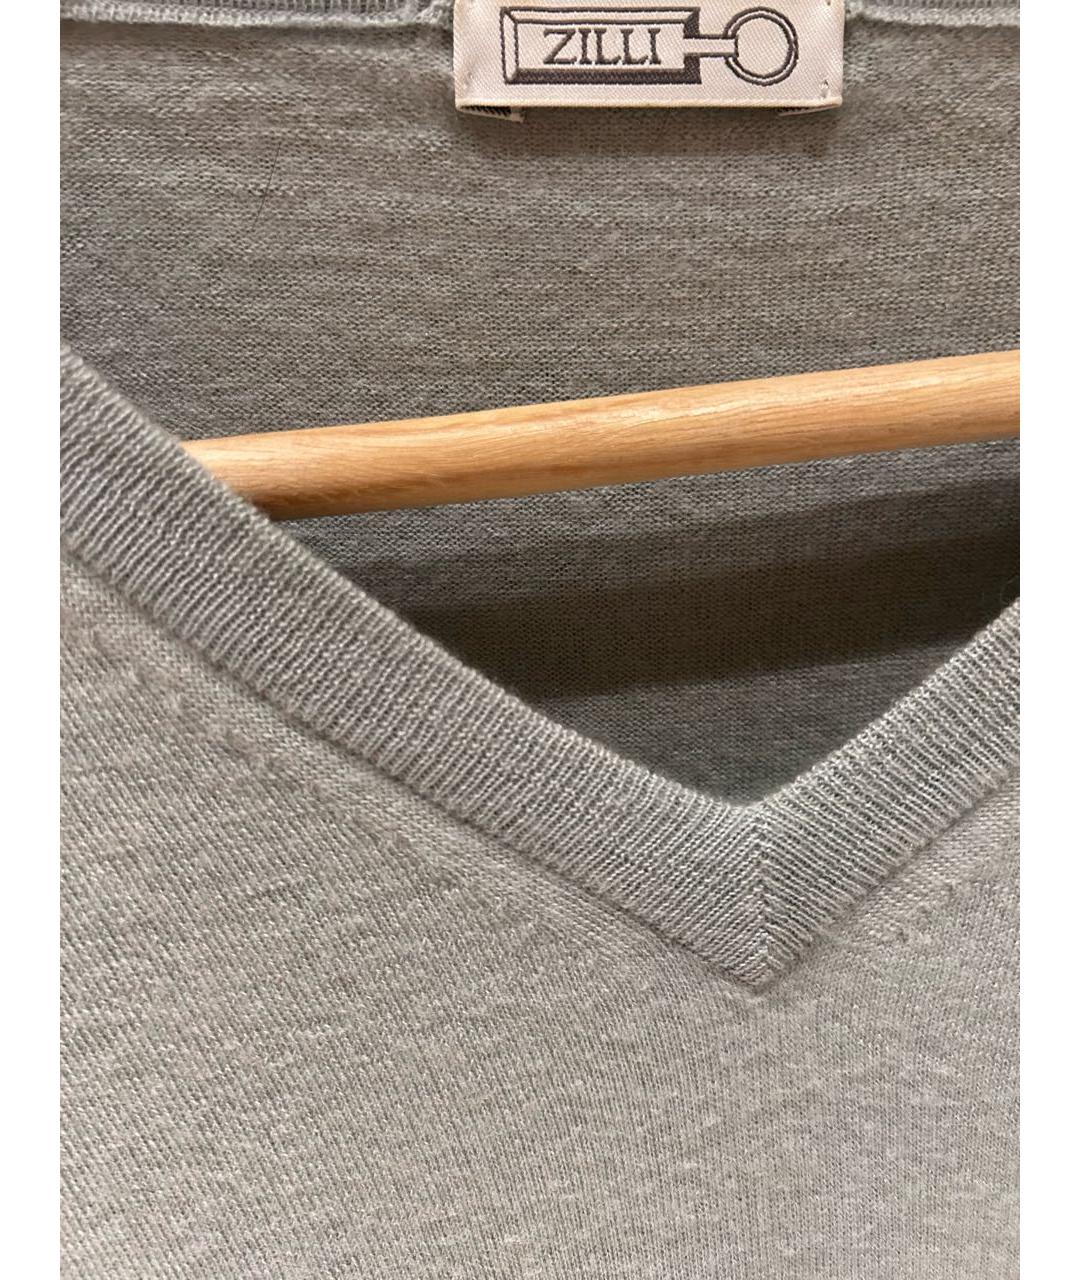 ZILLI Голубой кашемировый джемпер / свитер, фото 2